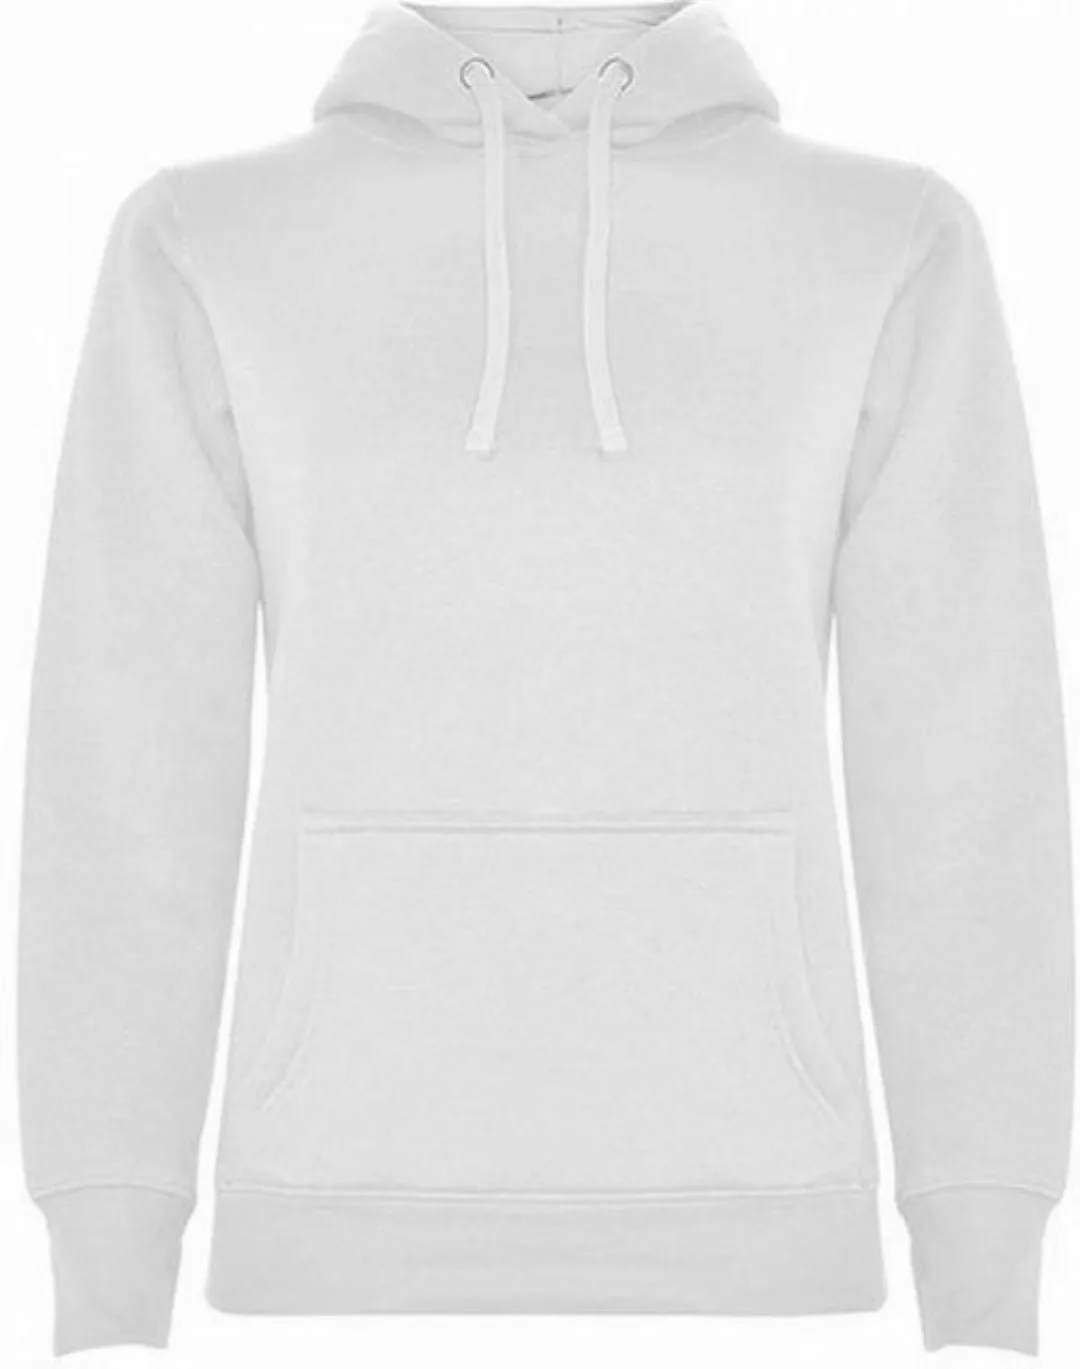 Roly Kapuzenpullover Damen Urban Hooded Sweatshirt, Tailliert günstig online kaufen